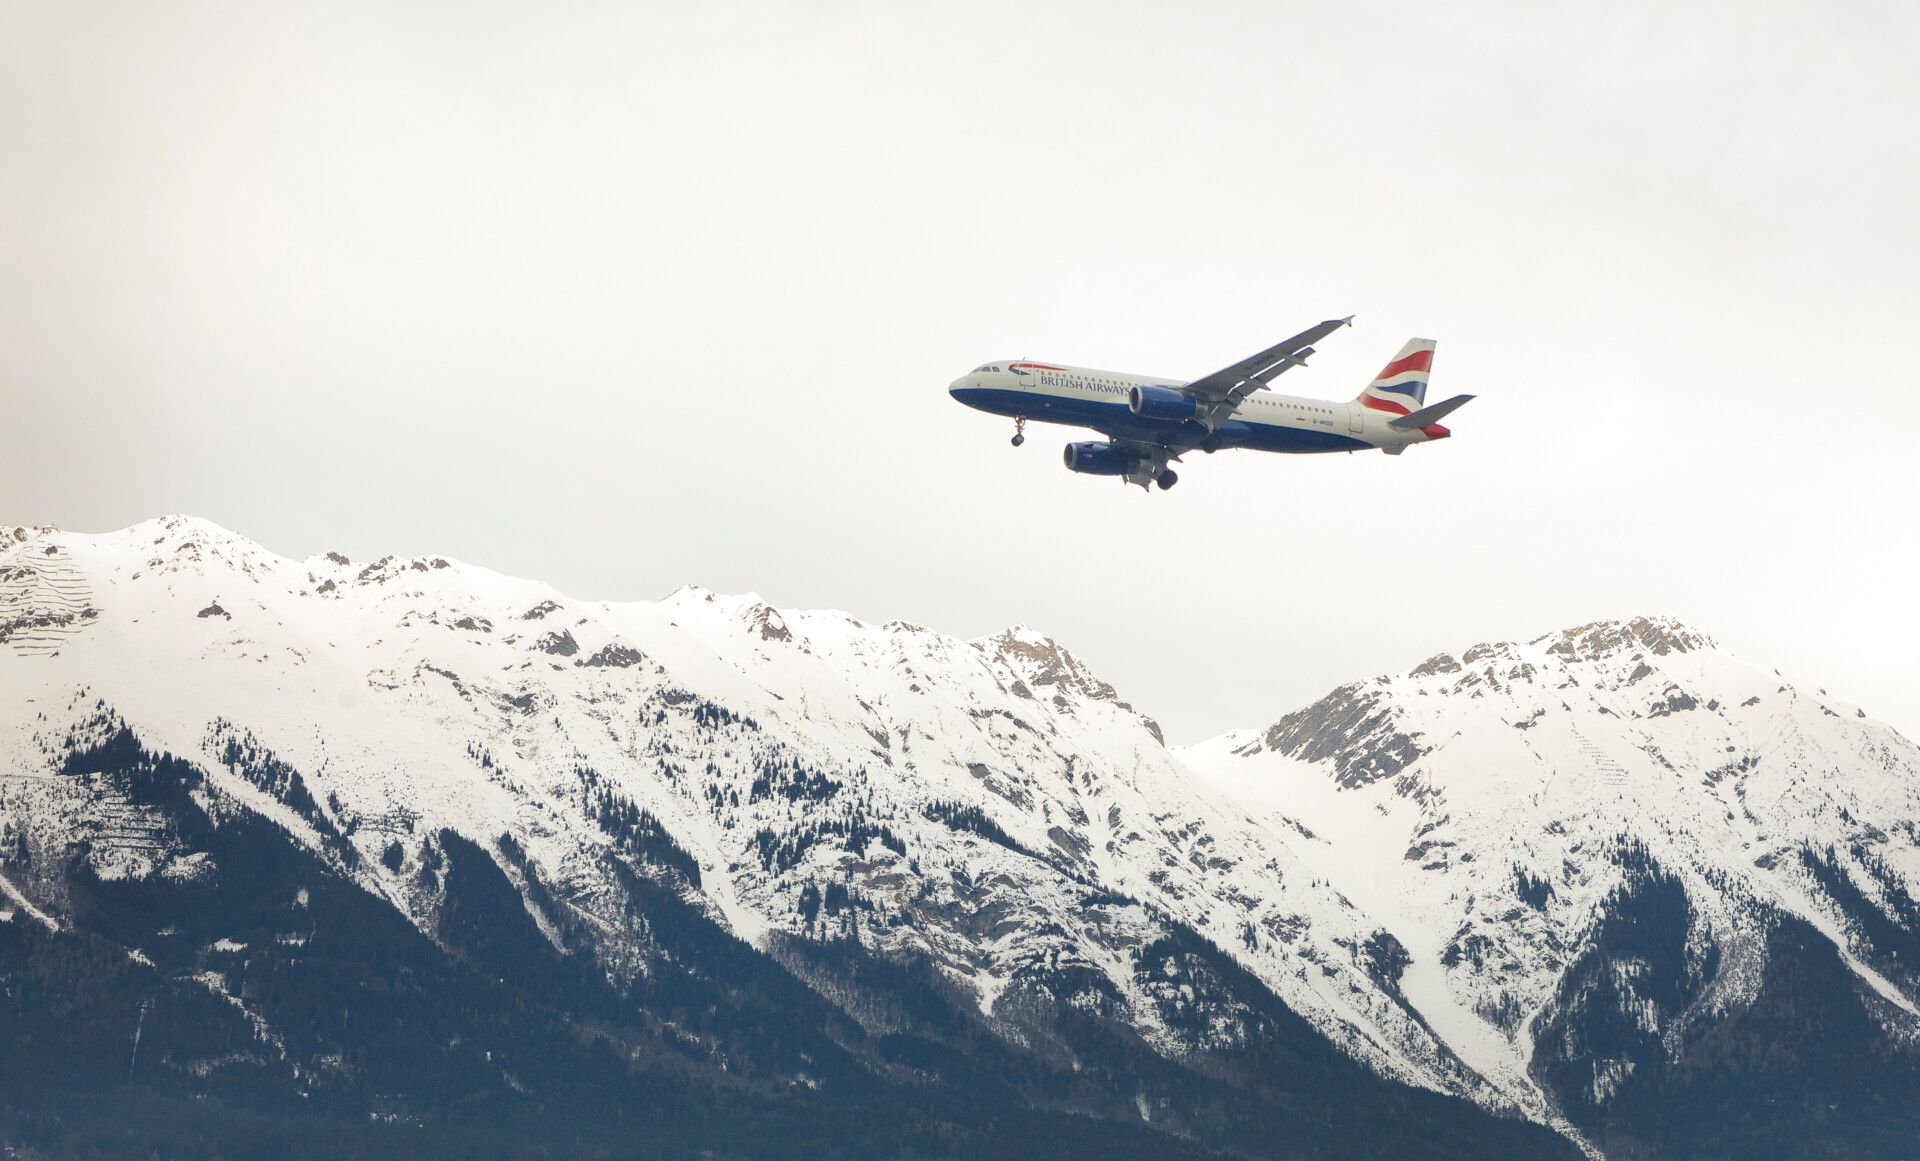 Austrian mountains overflown by a British Airways aircraft